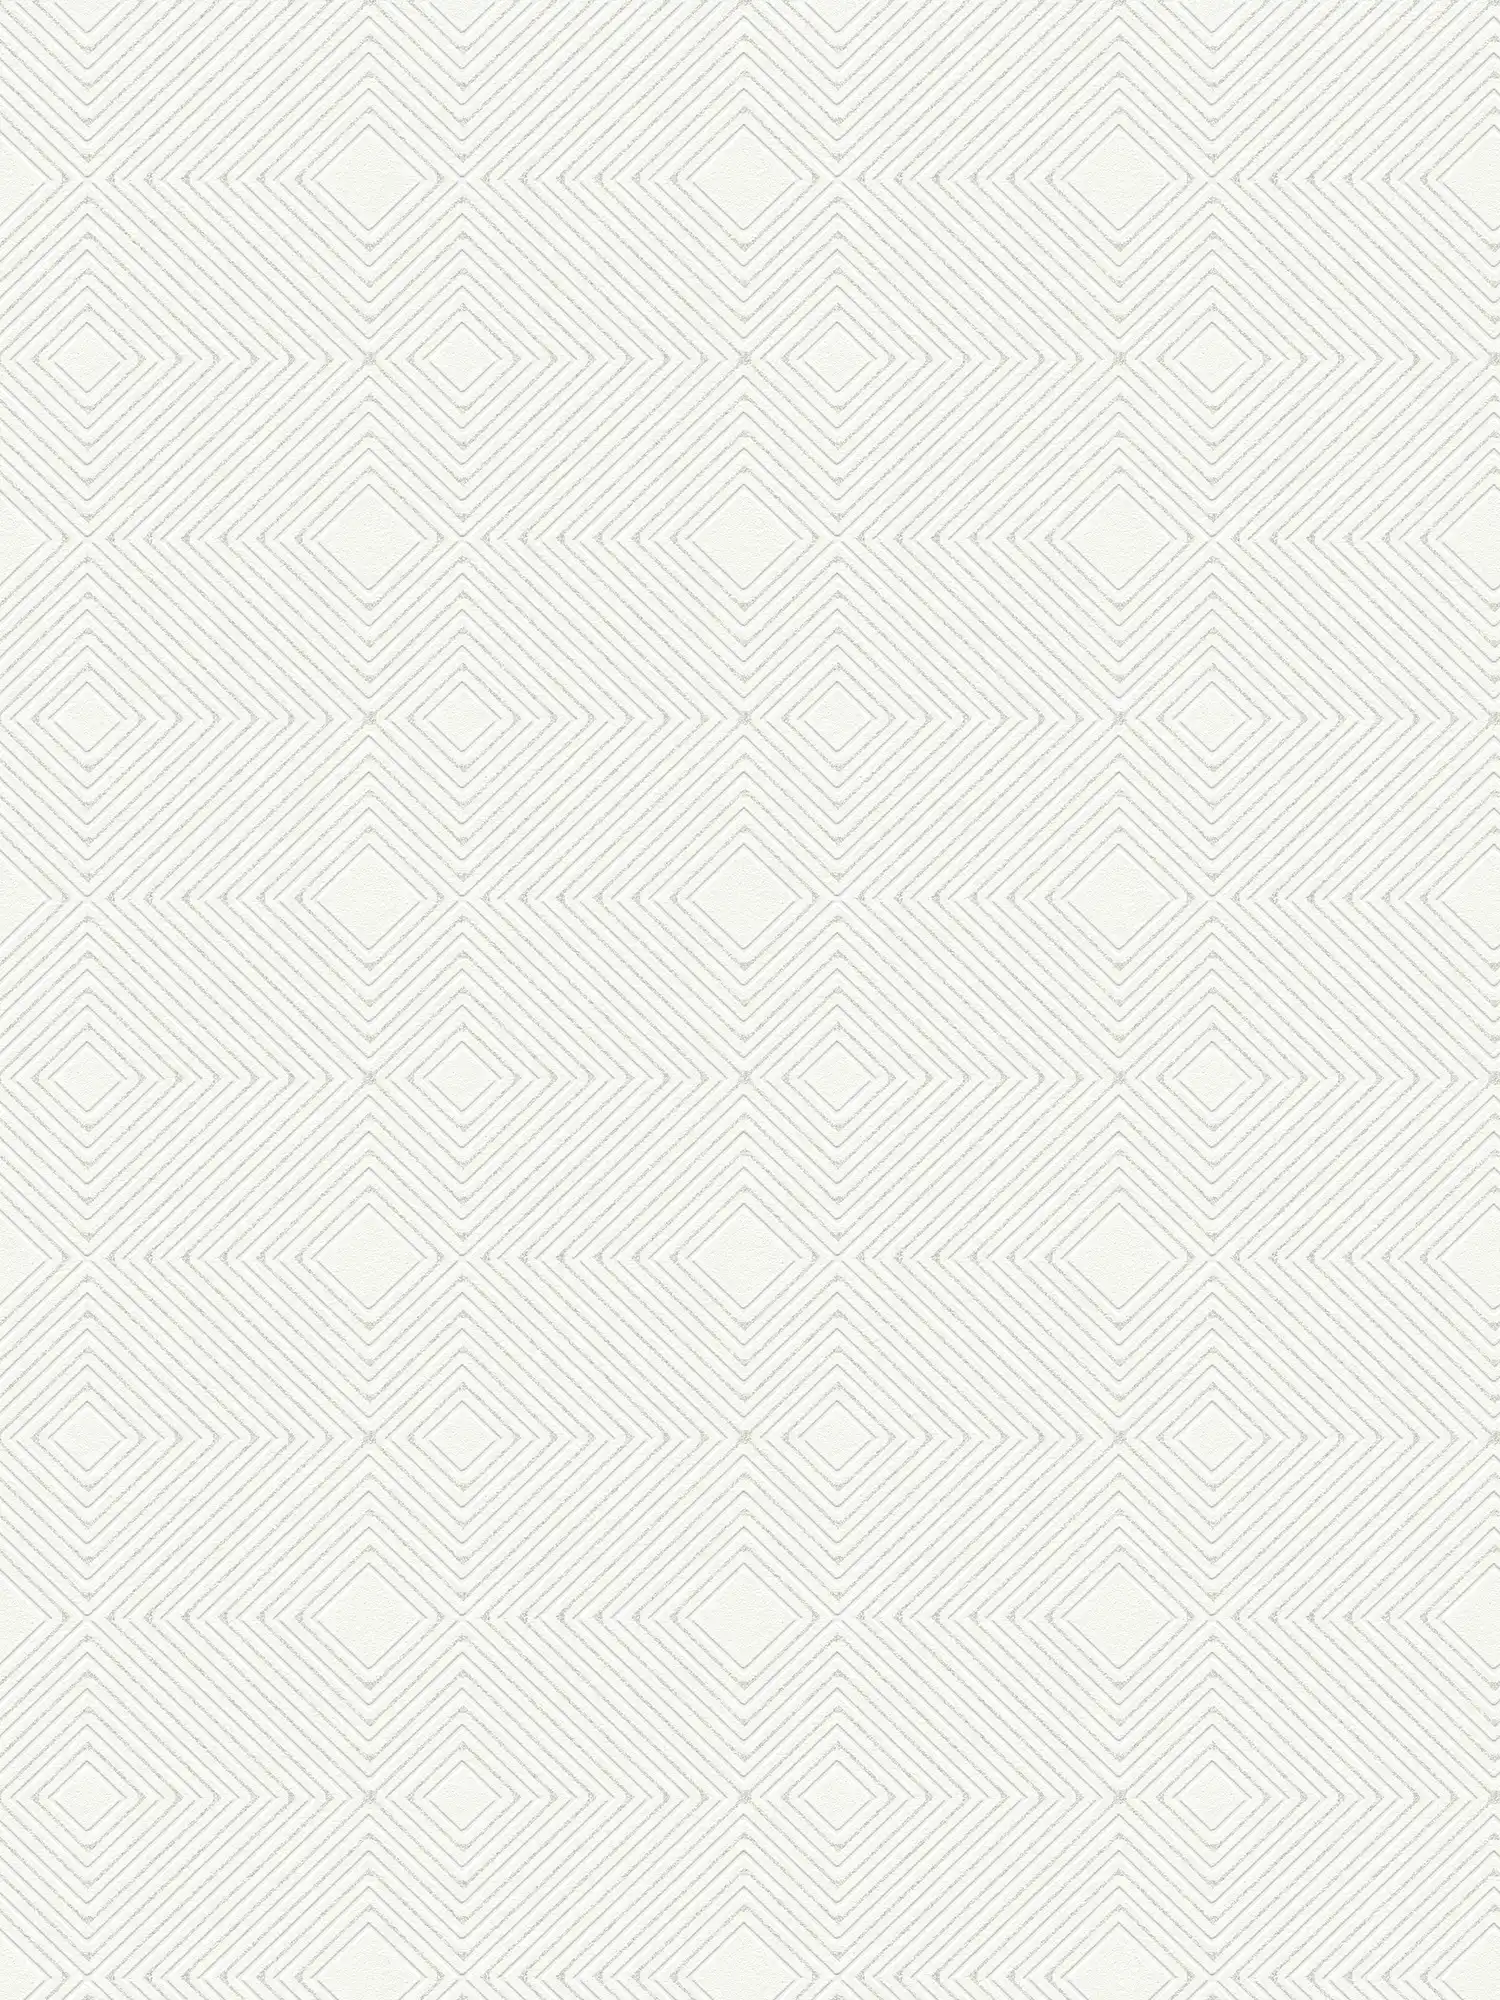 Tapete mit geometrischem Muster & Metallic Effekt – Weiß
